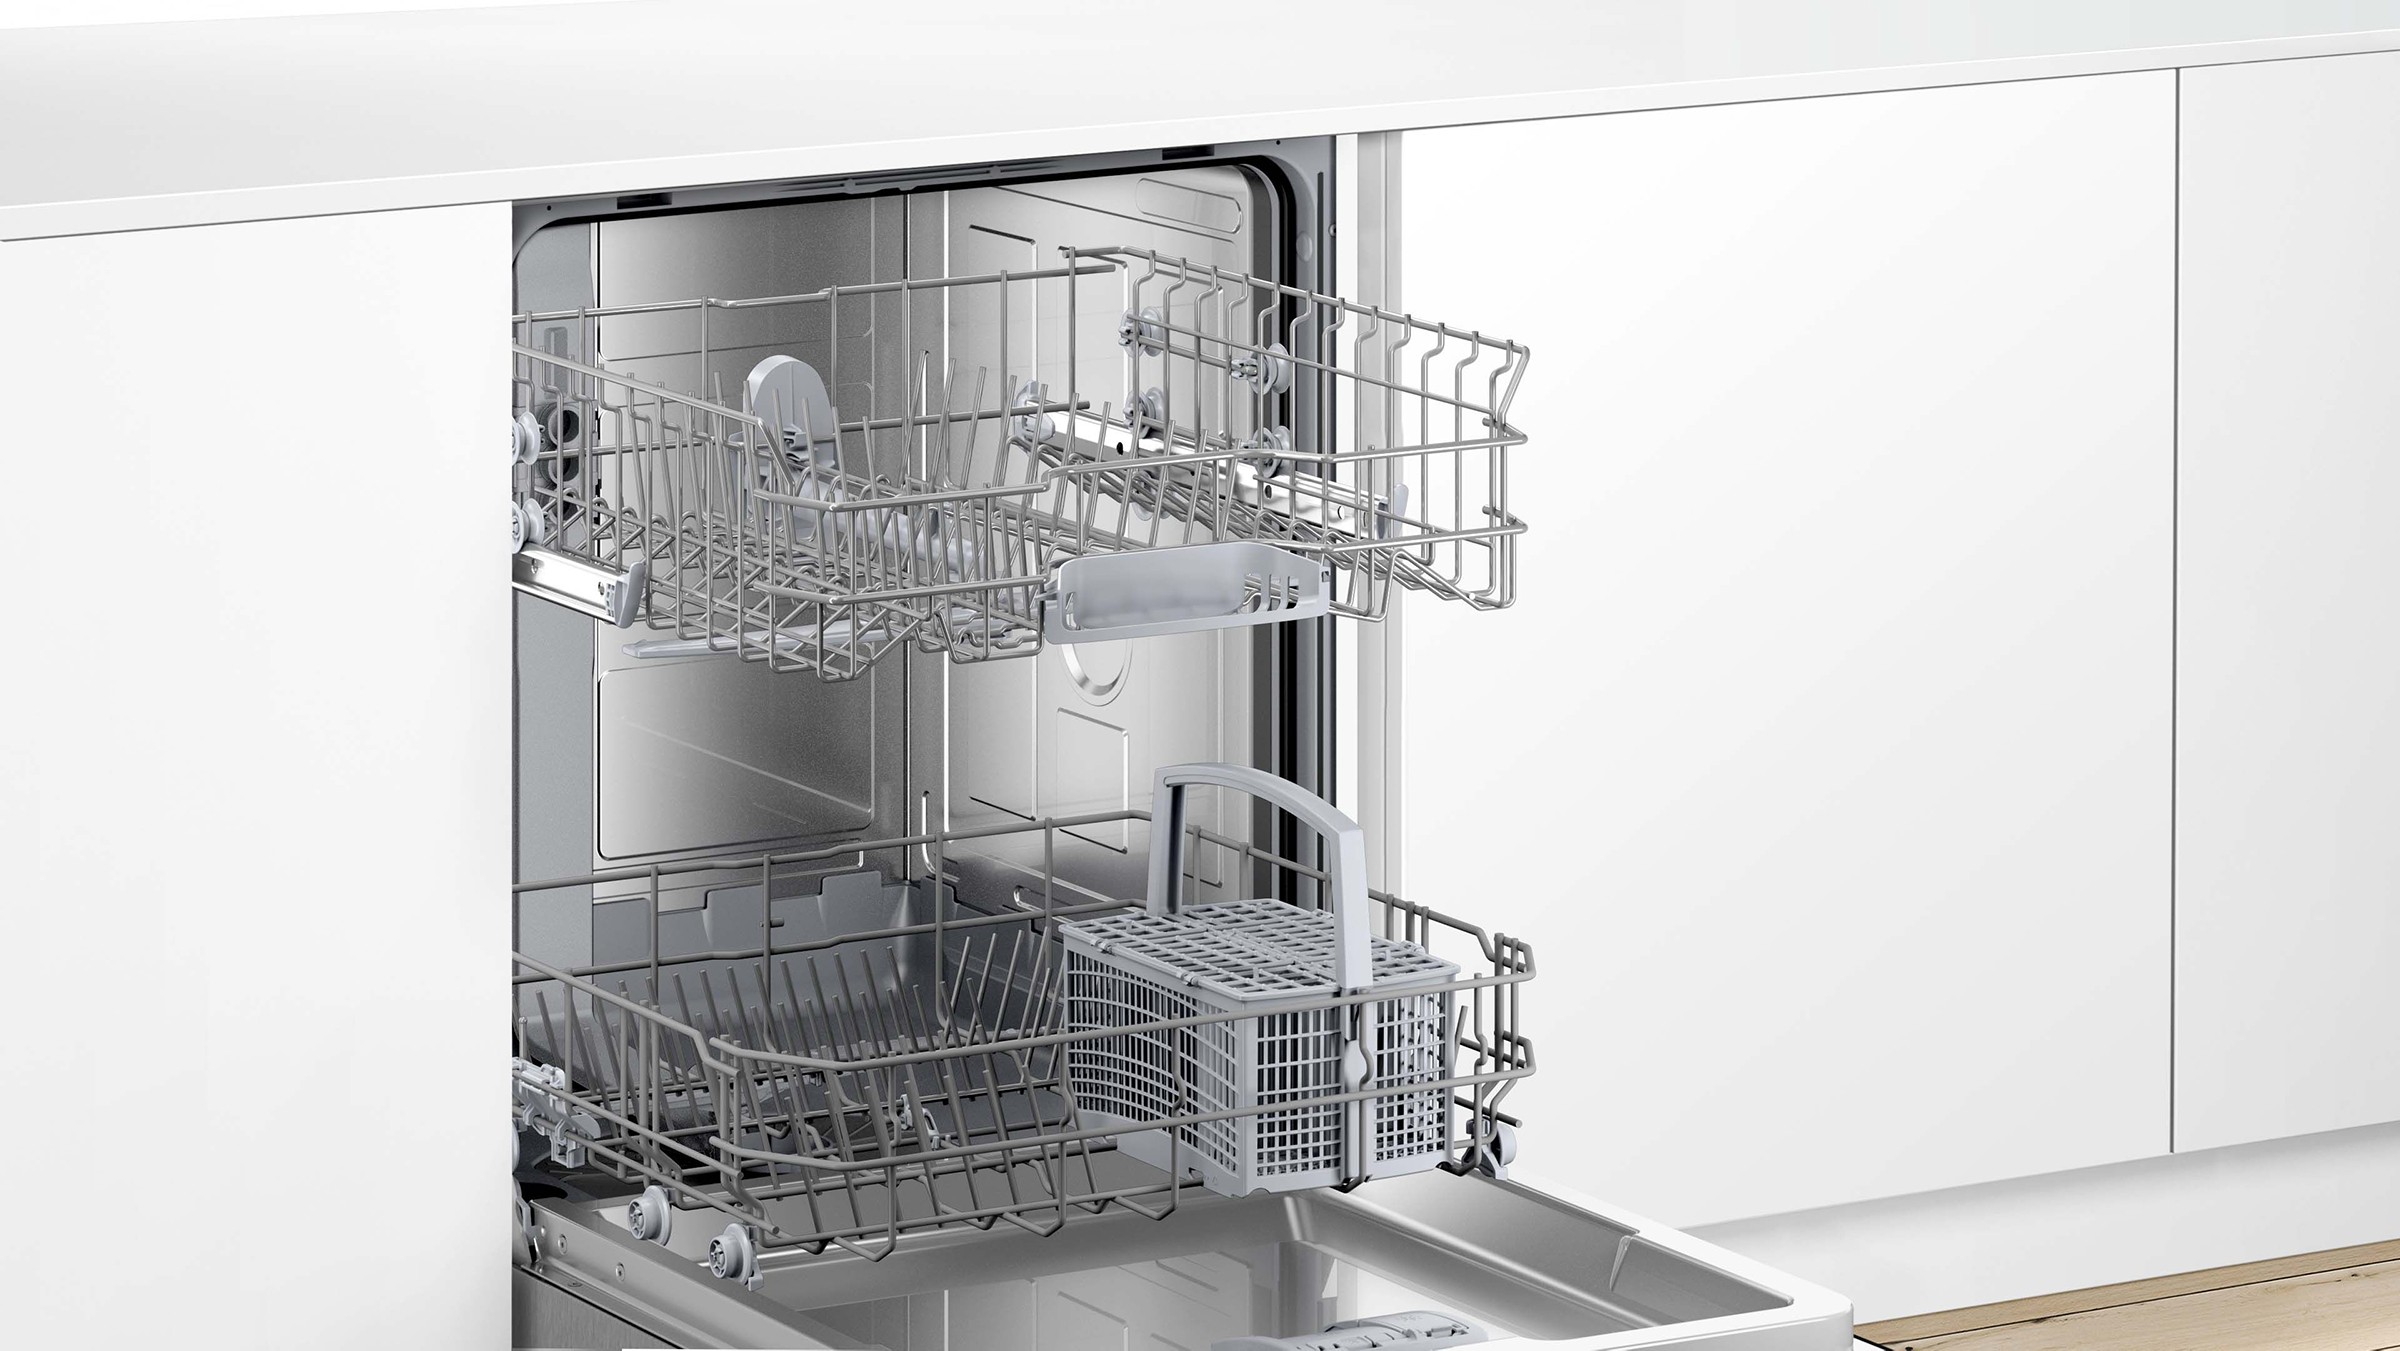 BOSCH Lave vaisselle tout integrable 60 cm Série 4 Home Connect ExtraDry 12 couverts - SMH4ITX12E